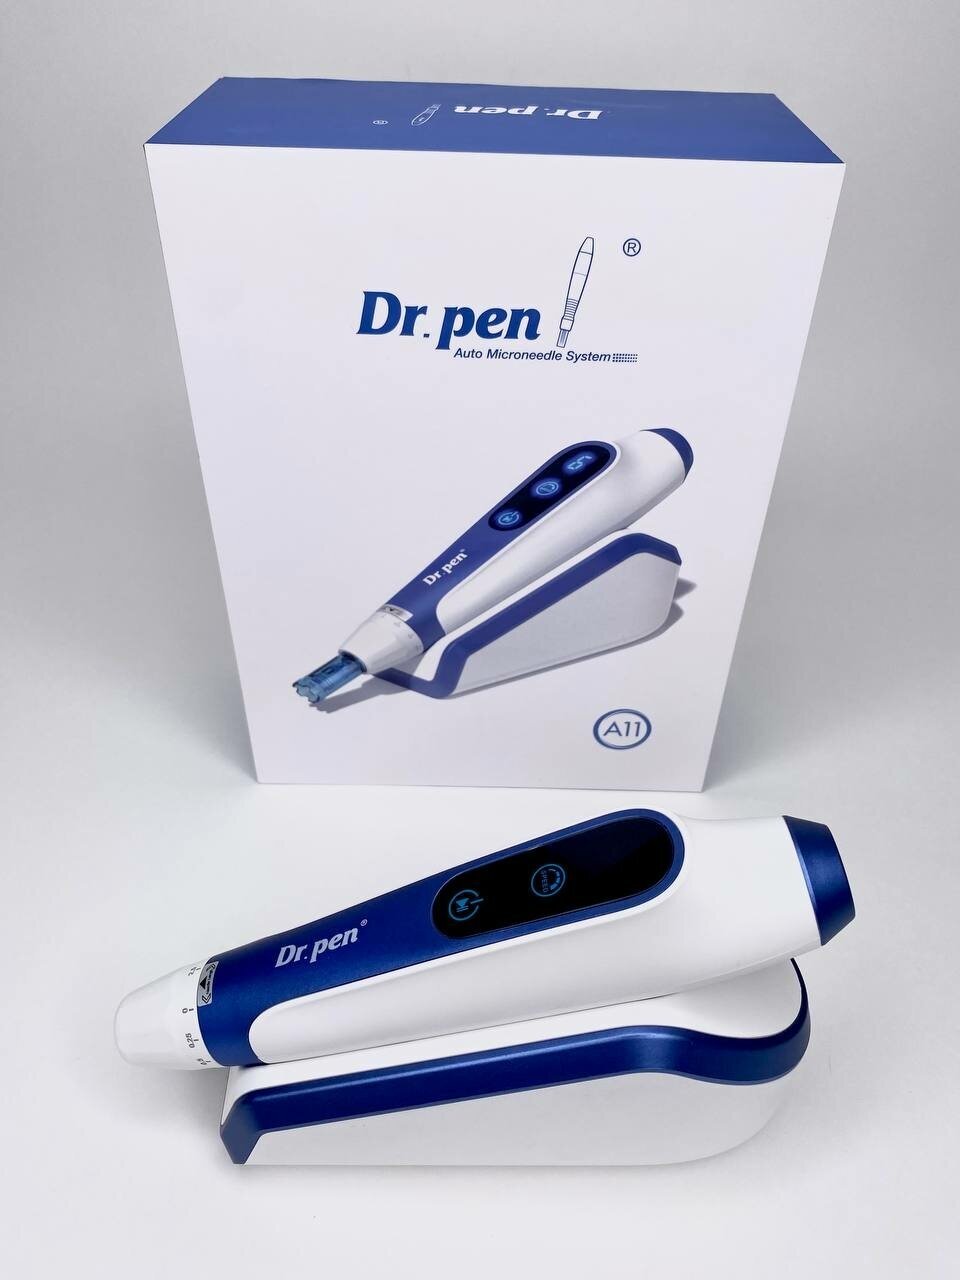 Dr.pen A11 Аппарат для фракционной мезотерапии / микронидлинга / электрический мезороллер для лица